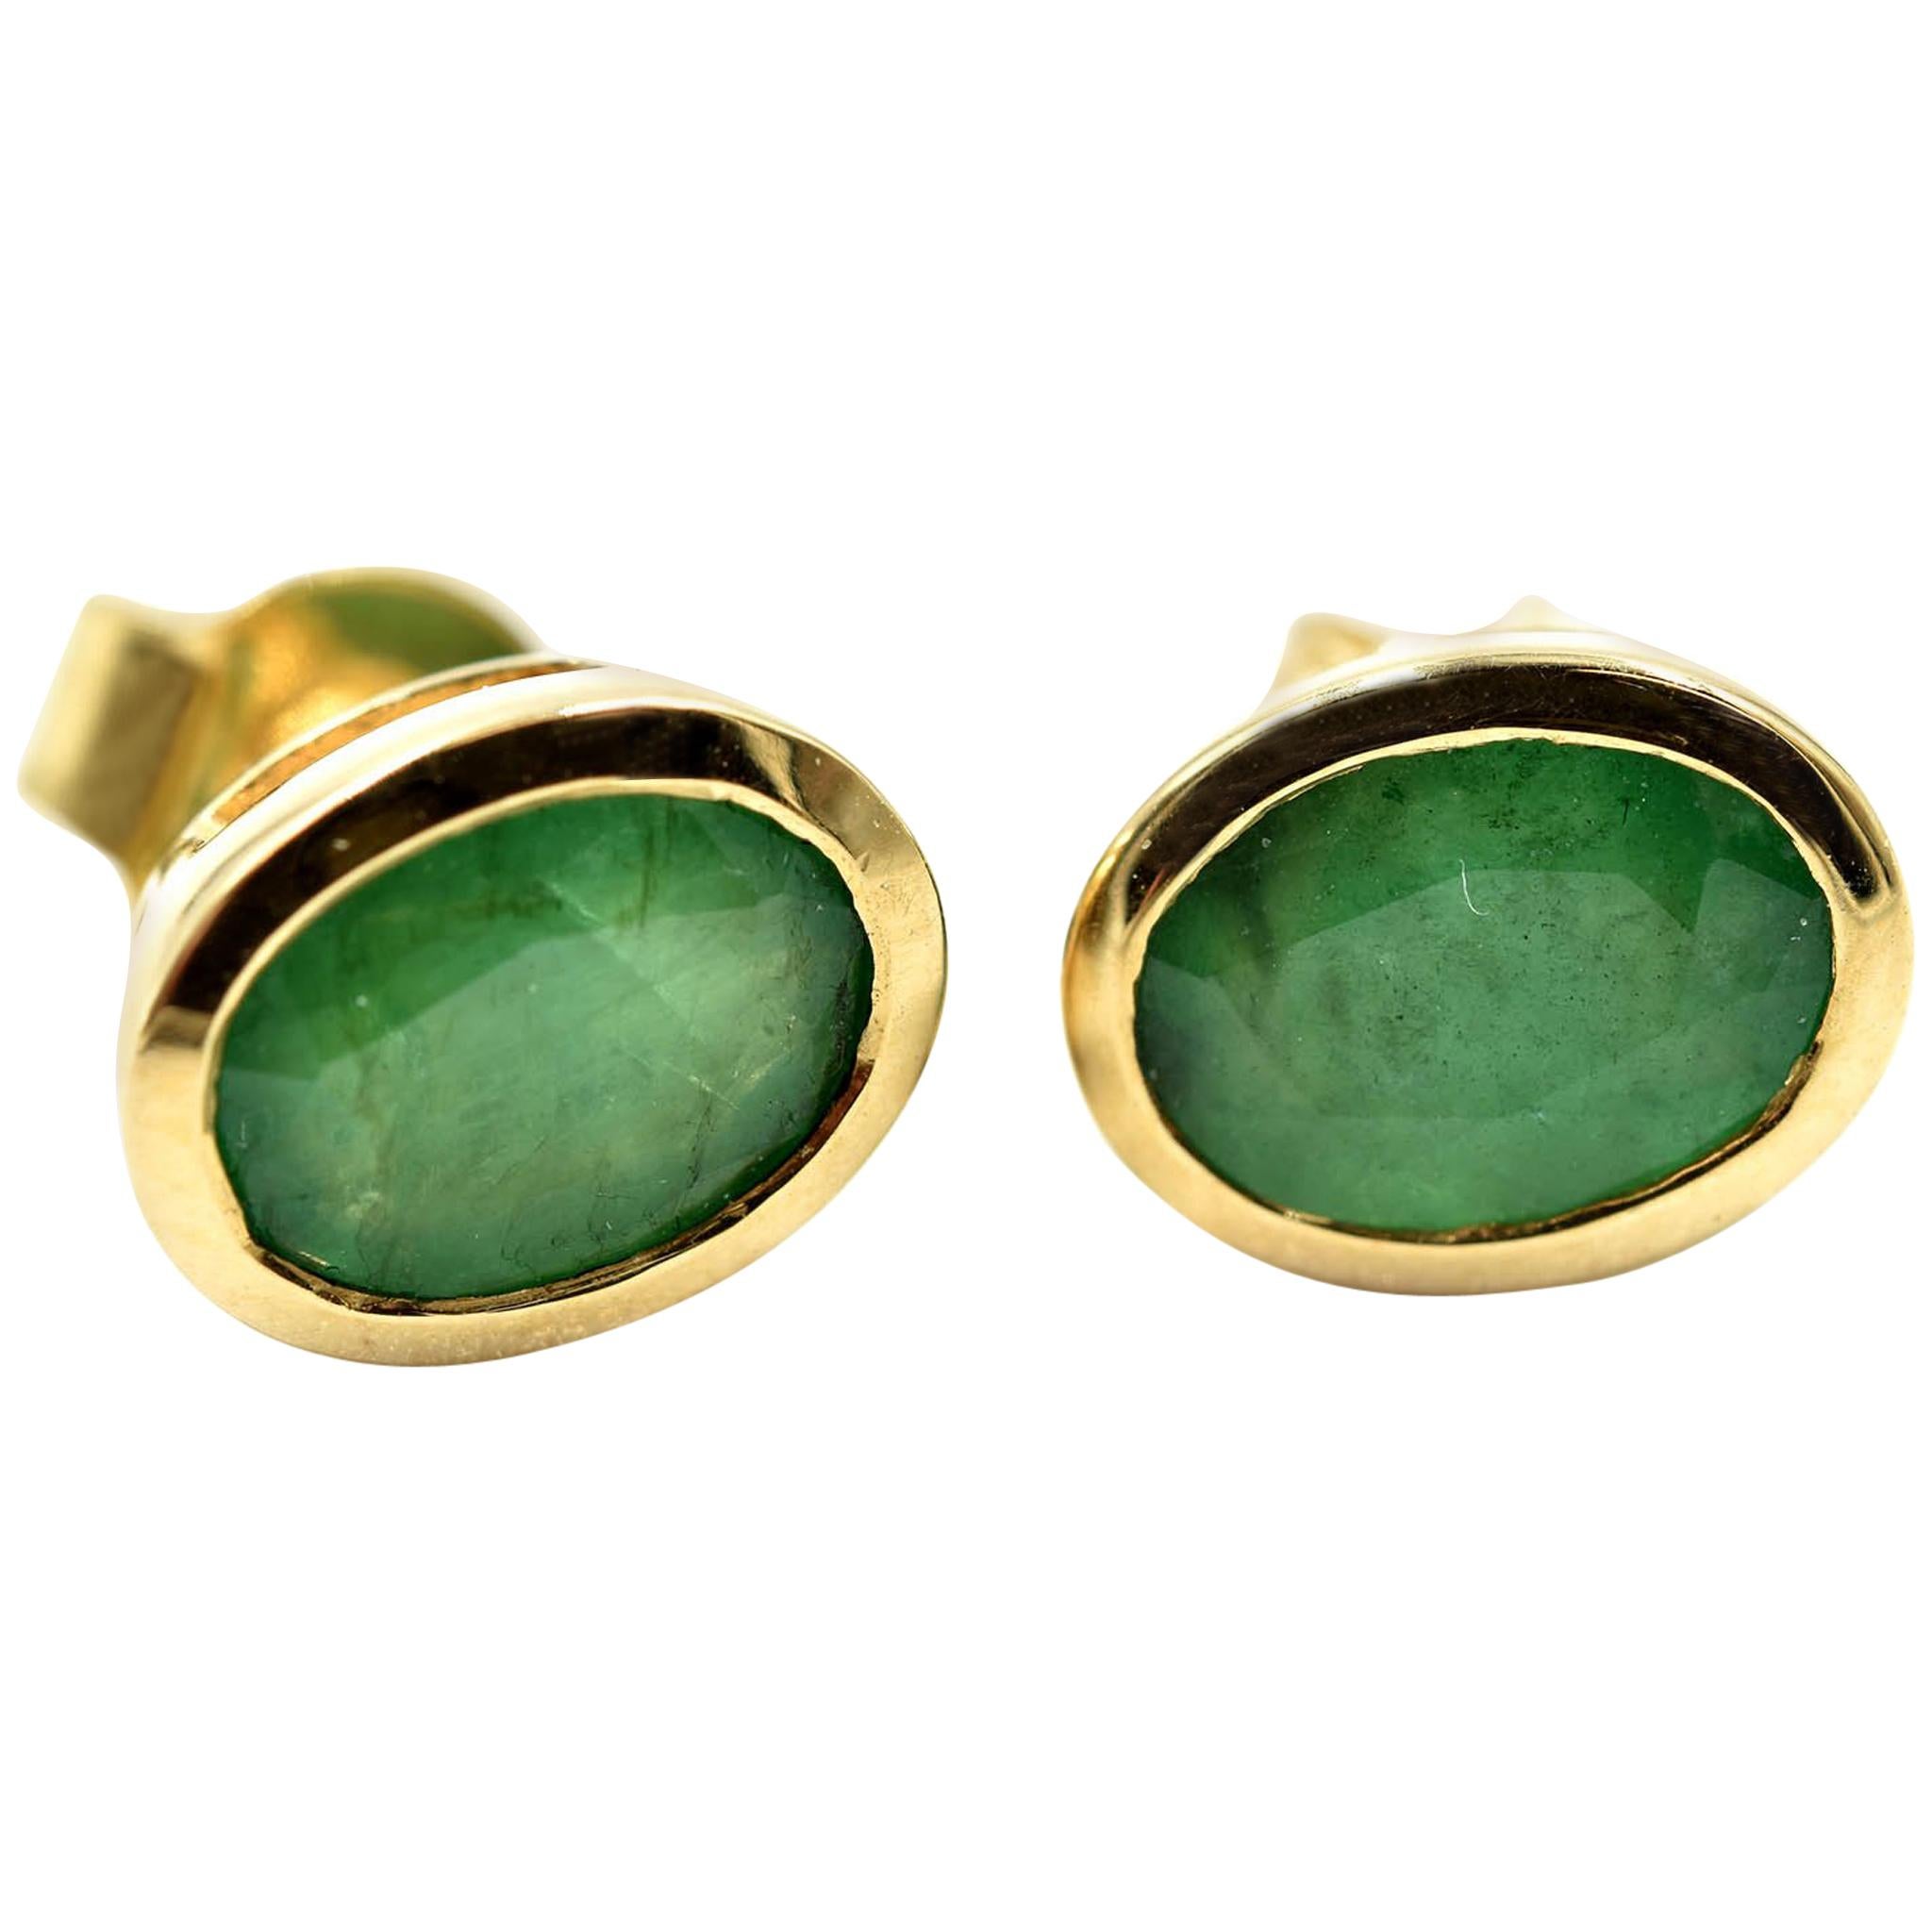 Oval Cut Emerald Bezel Set Stud Earrings 14 Karat Yellow Gold